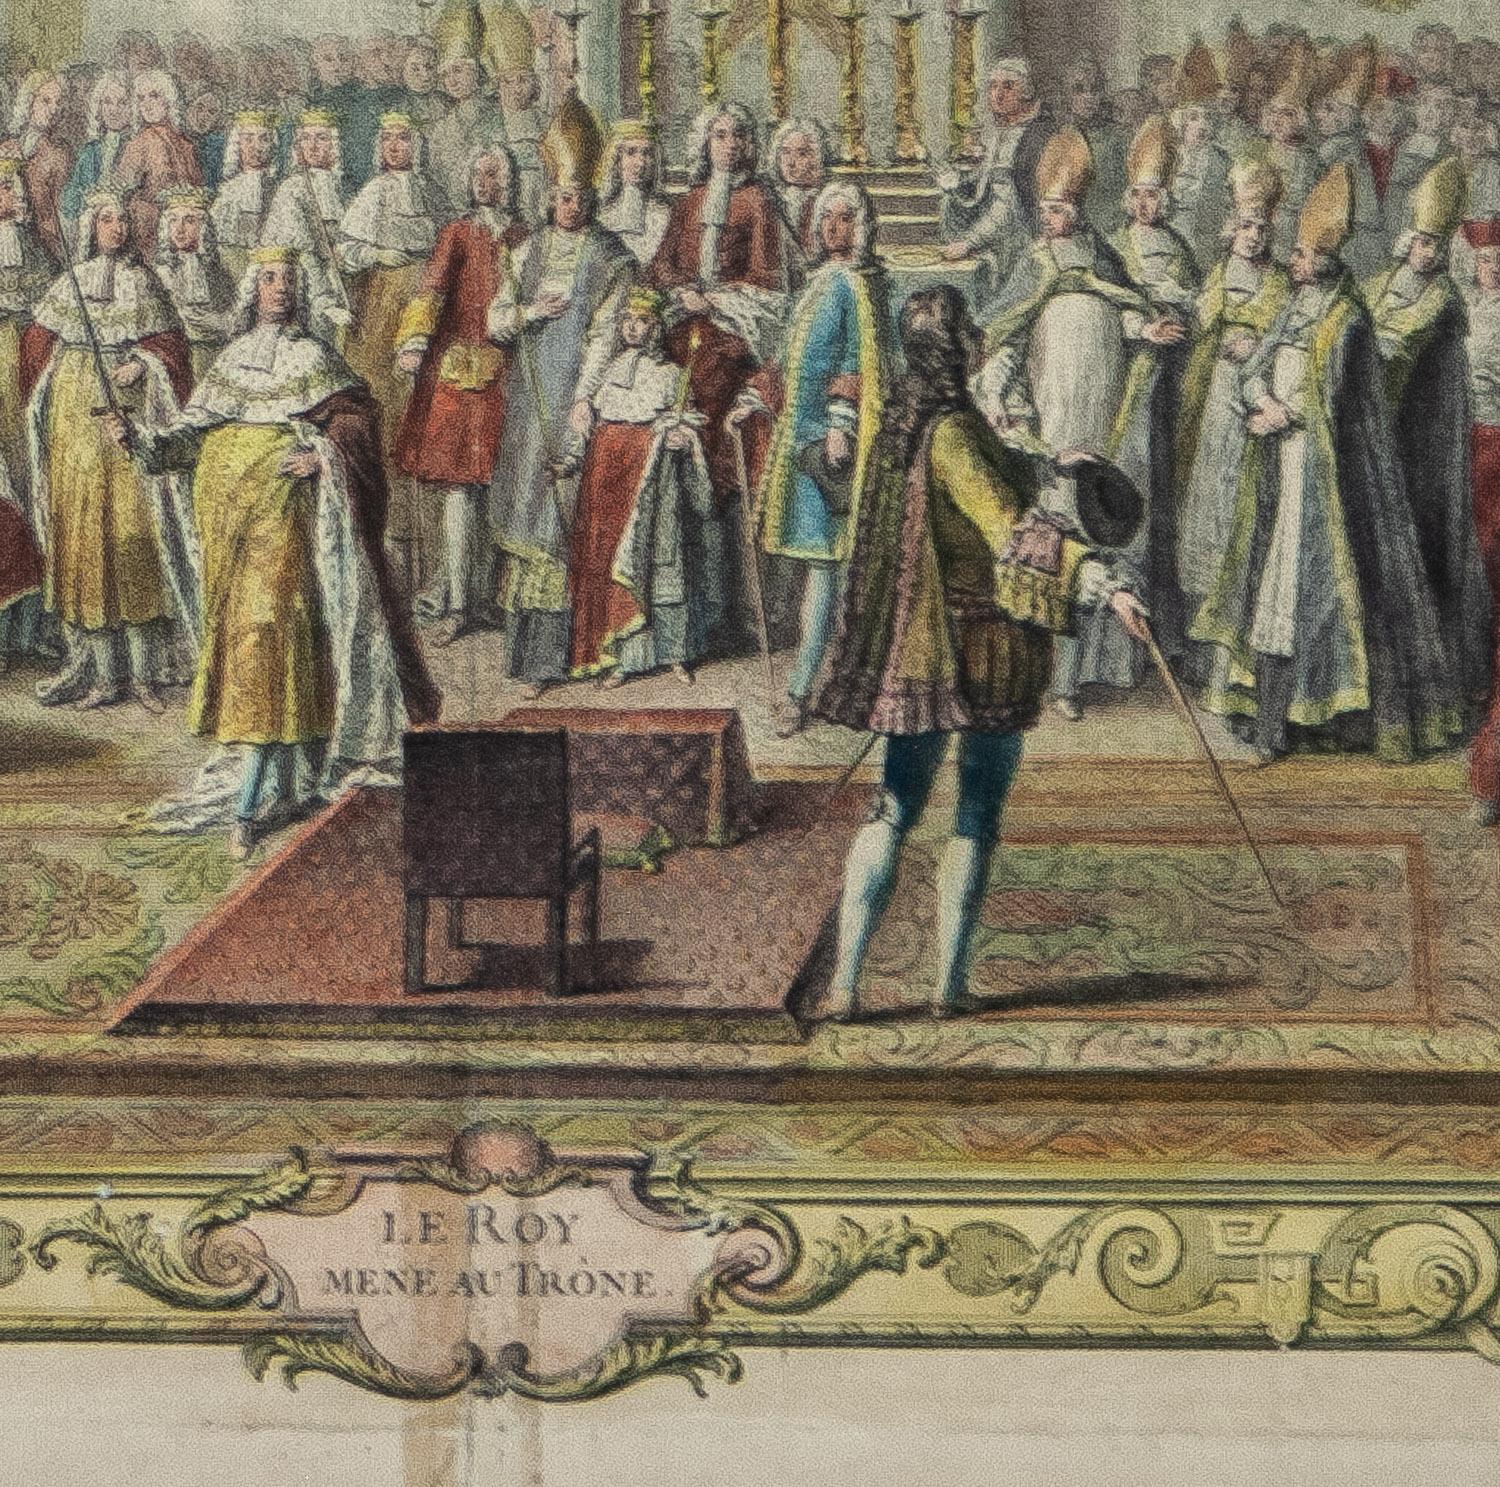 Le Roy Mene au Trone aus der Serie Le Sacre de Louis XV. 1722-1731 – Print von Charles Nicolas Cochin the Elder